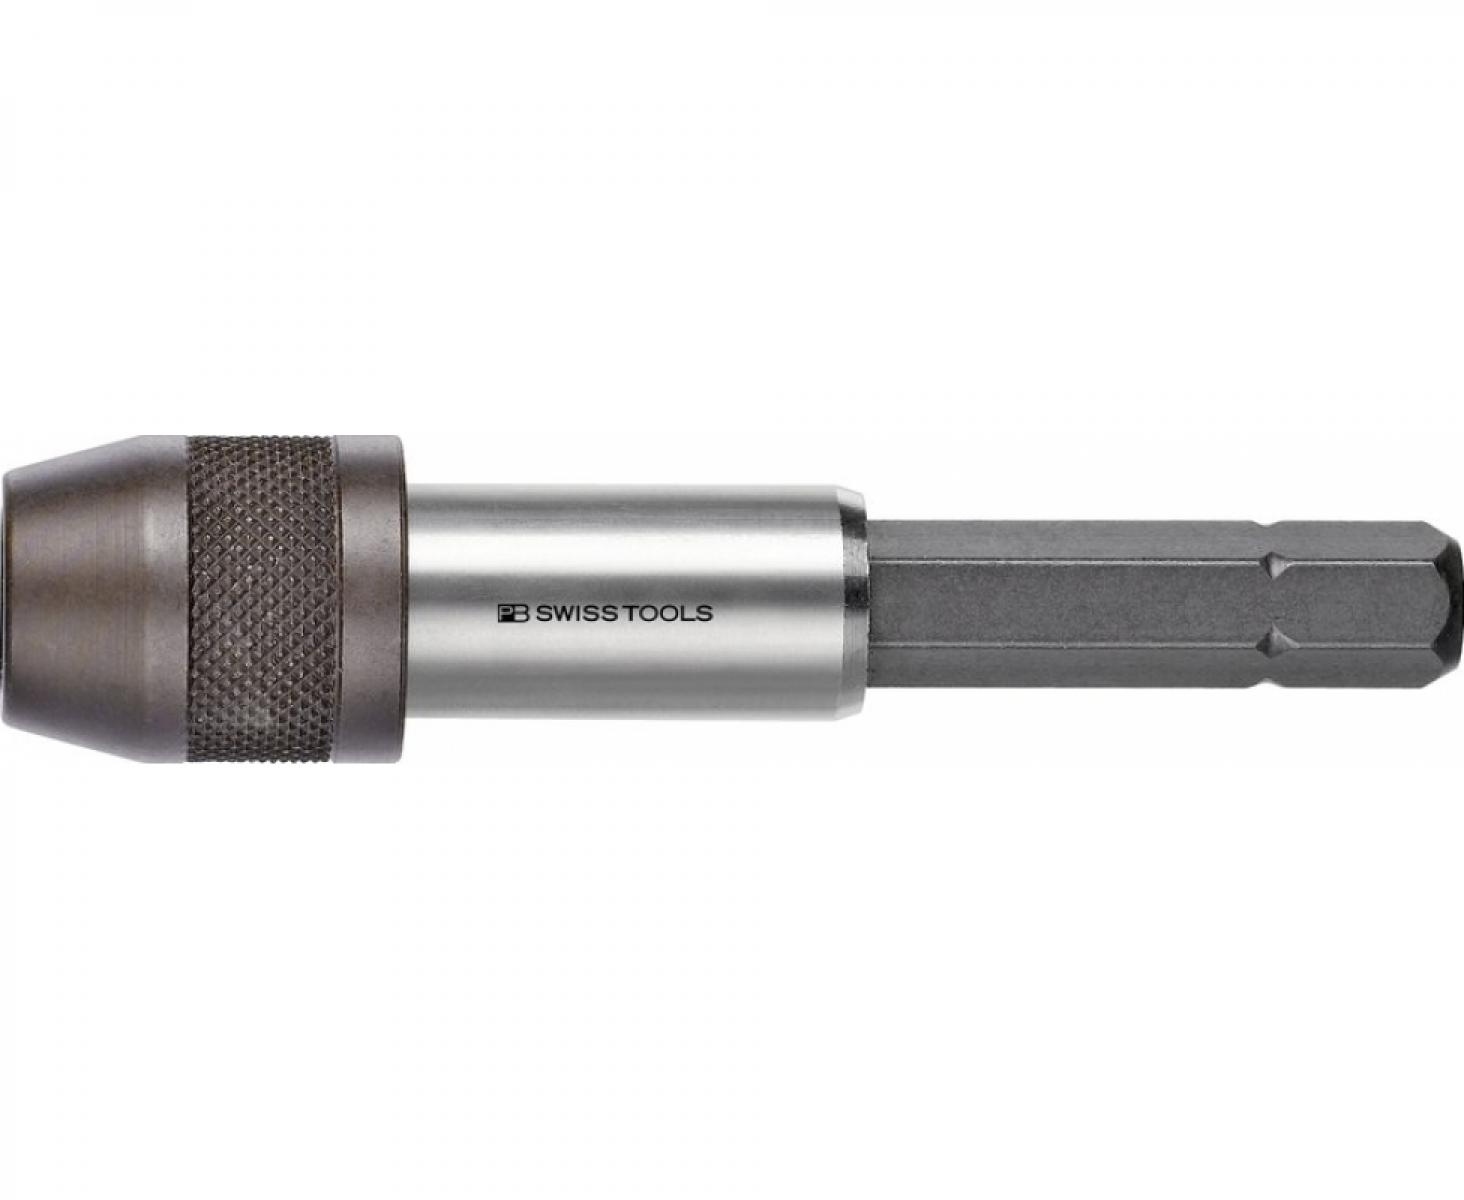 Безопасный держатель бит C6,3 1/4" с фиксацией и магнитом PB Swiss Tools PB 460.